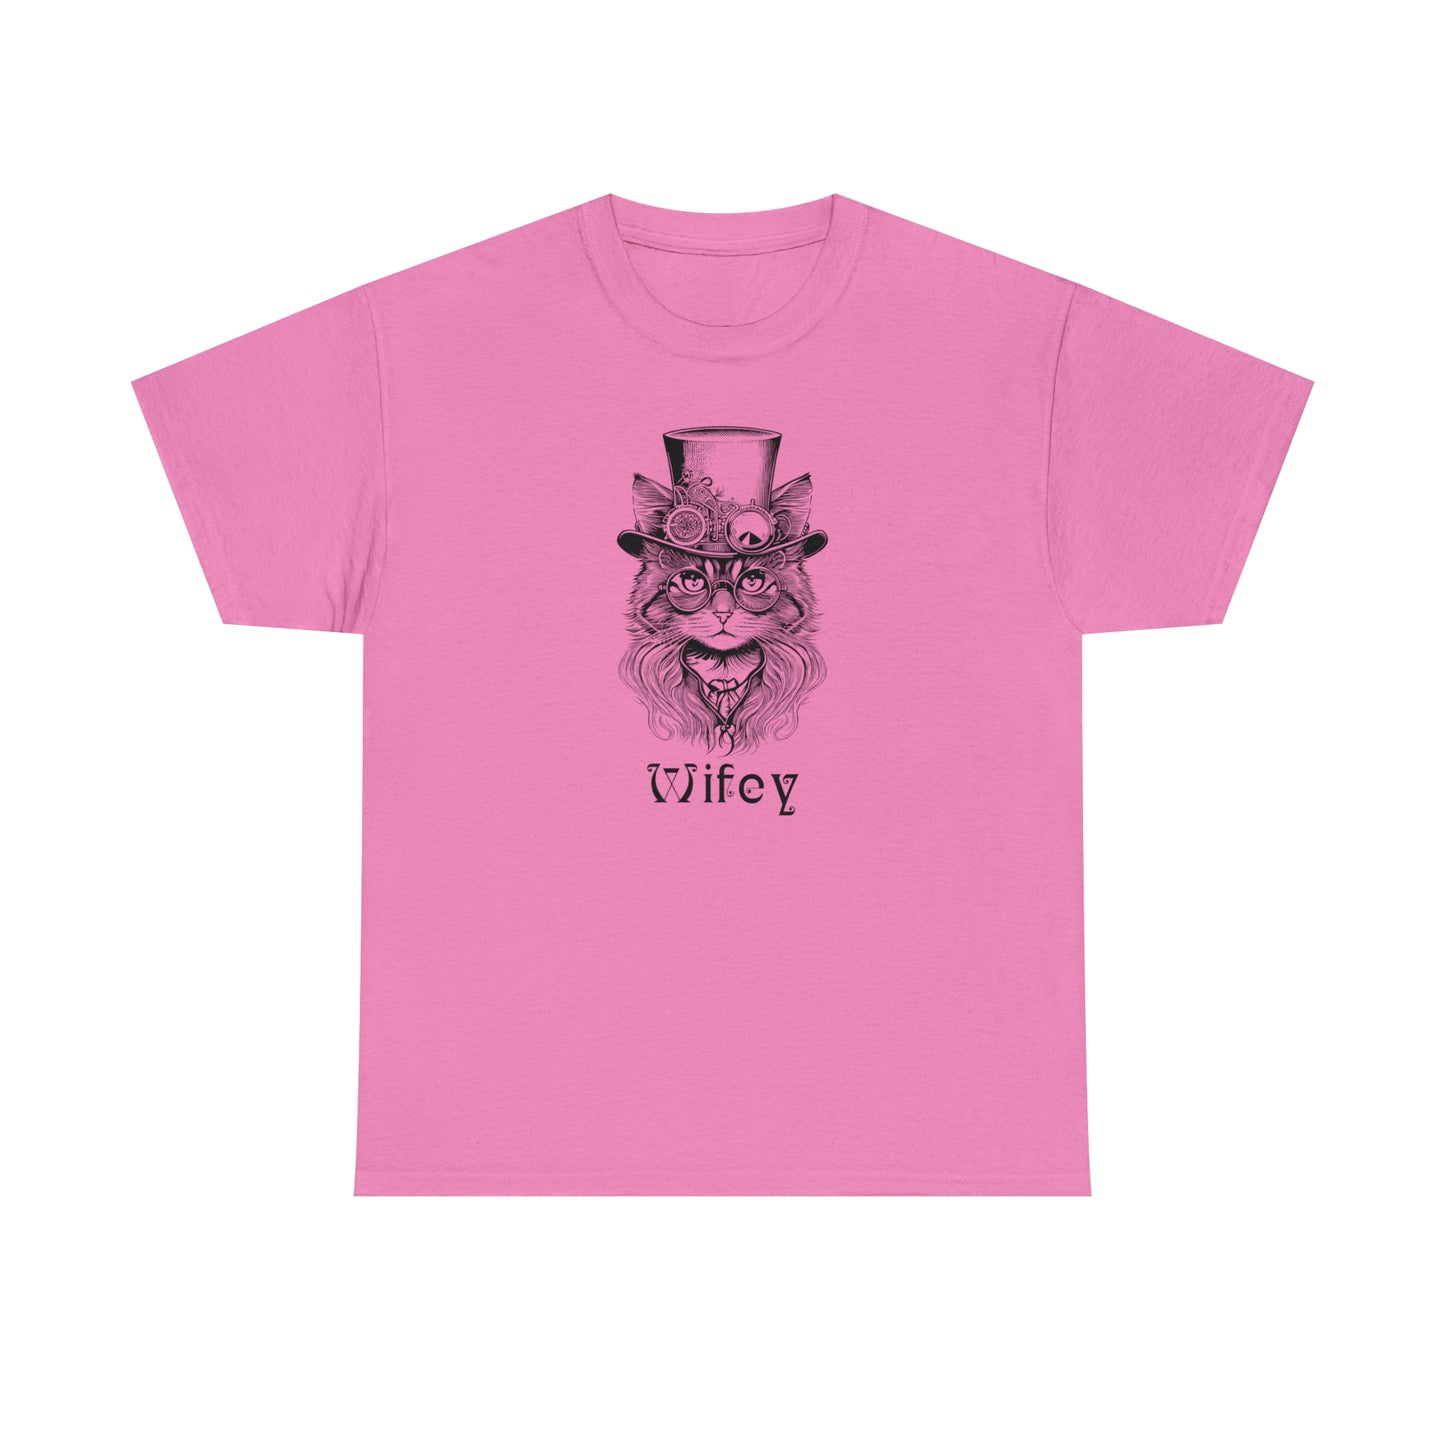 Wifey T-Shirt For Steampunk Wedding TShirt For Bride T Shirt For Couples Shirt For New Wife Shirt